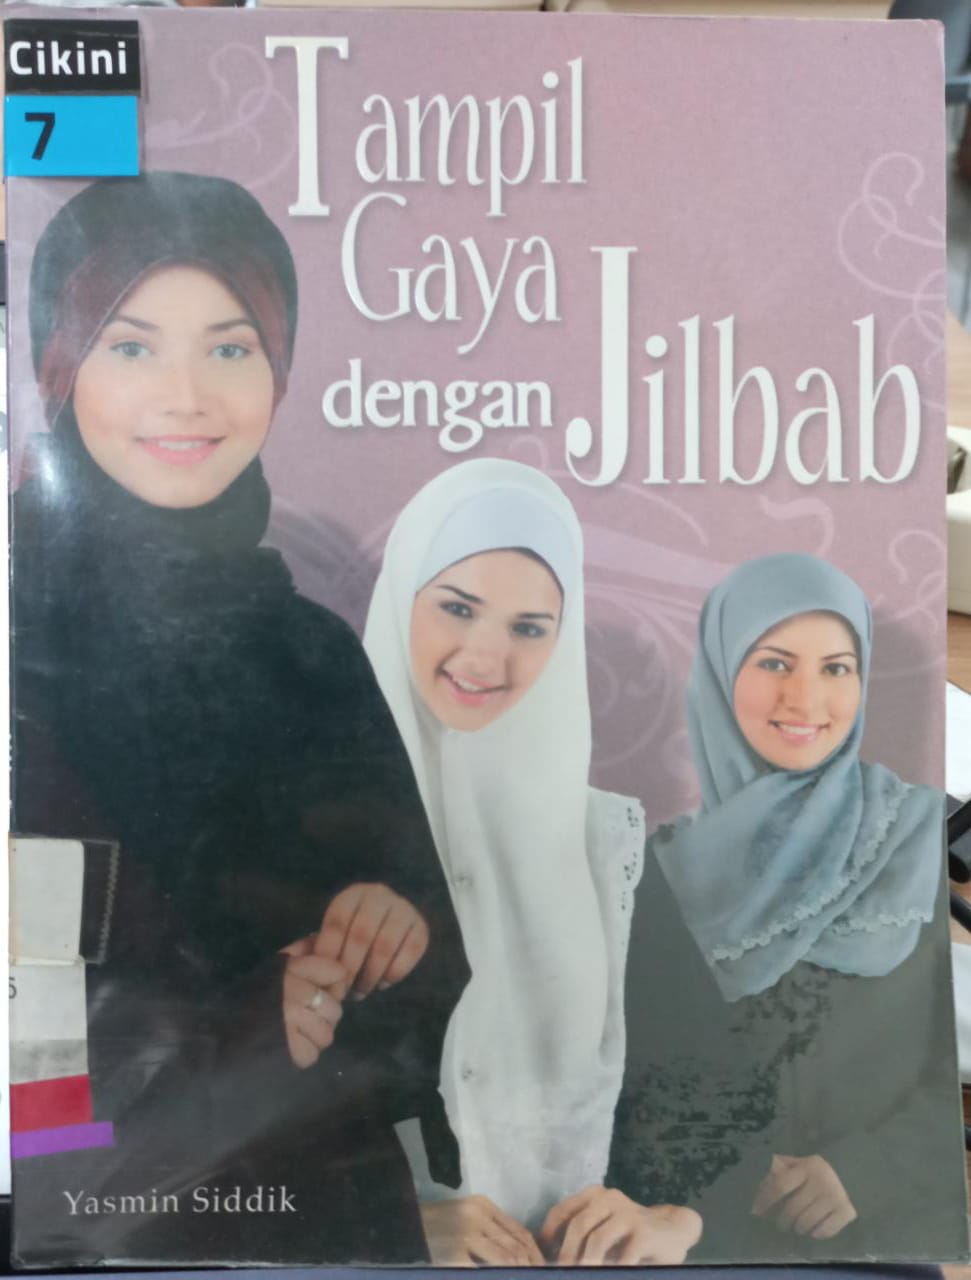 Tampil gaya dengan jilbab